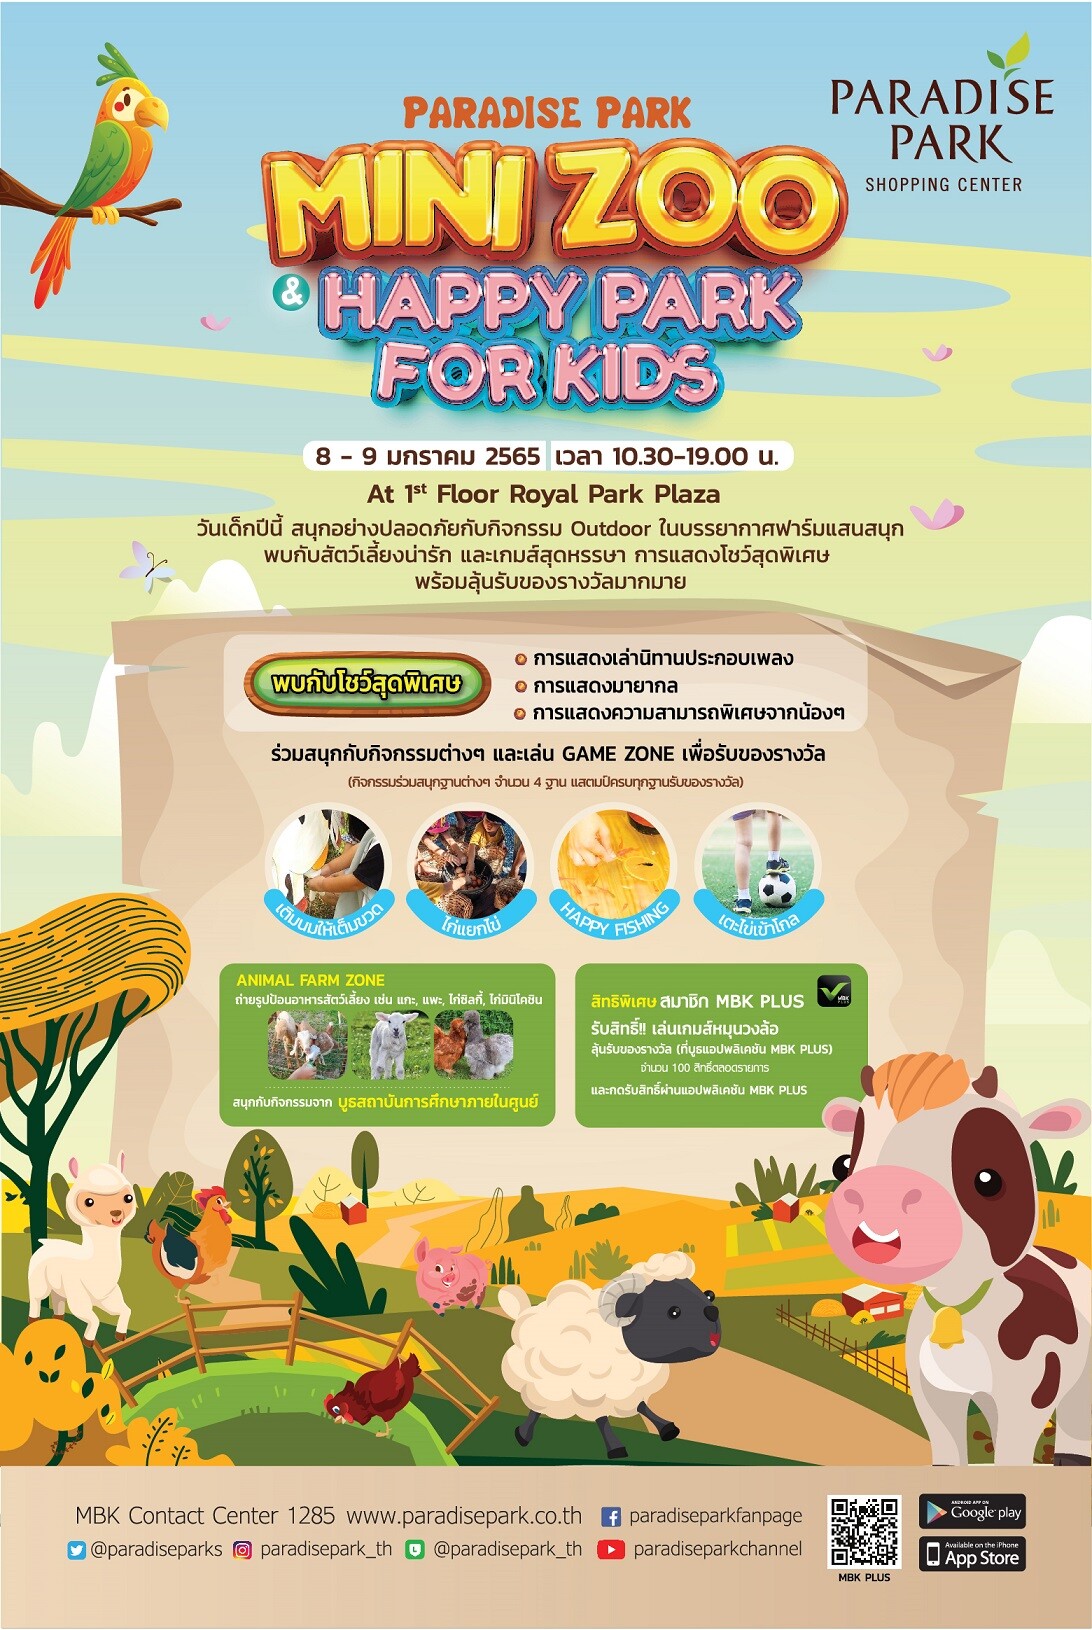 พาราไดซ์ พาร์ค ต้อนรับวันเด็ก ชวนน้อง ๆ สัมผัสบรรยากาศฟาร์มแสนสนุก งาน PARADISE PARK MINI ZOO & HAPPY PARK FOR KIDS